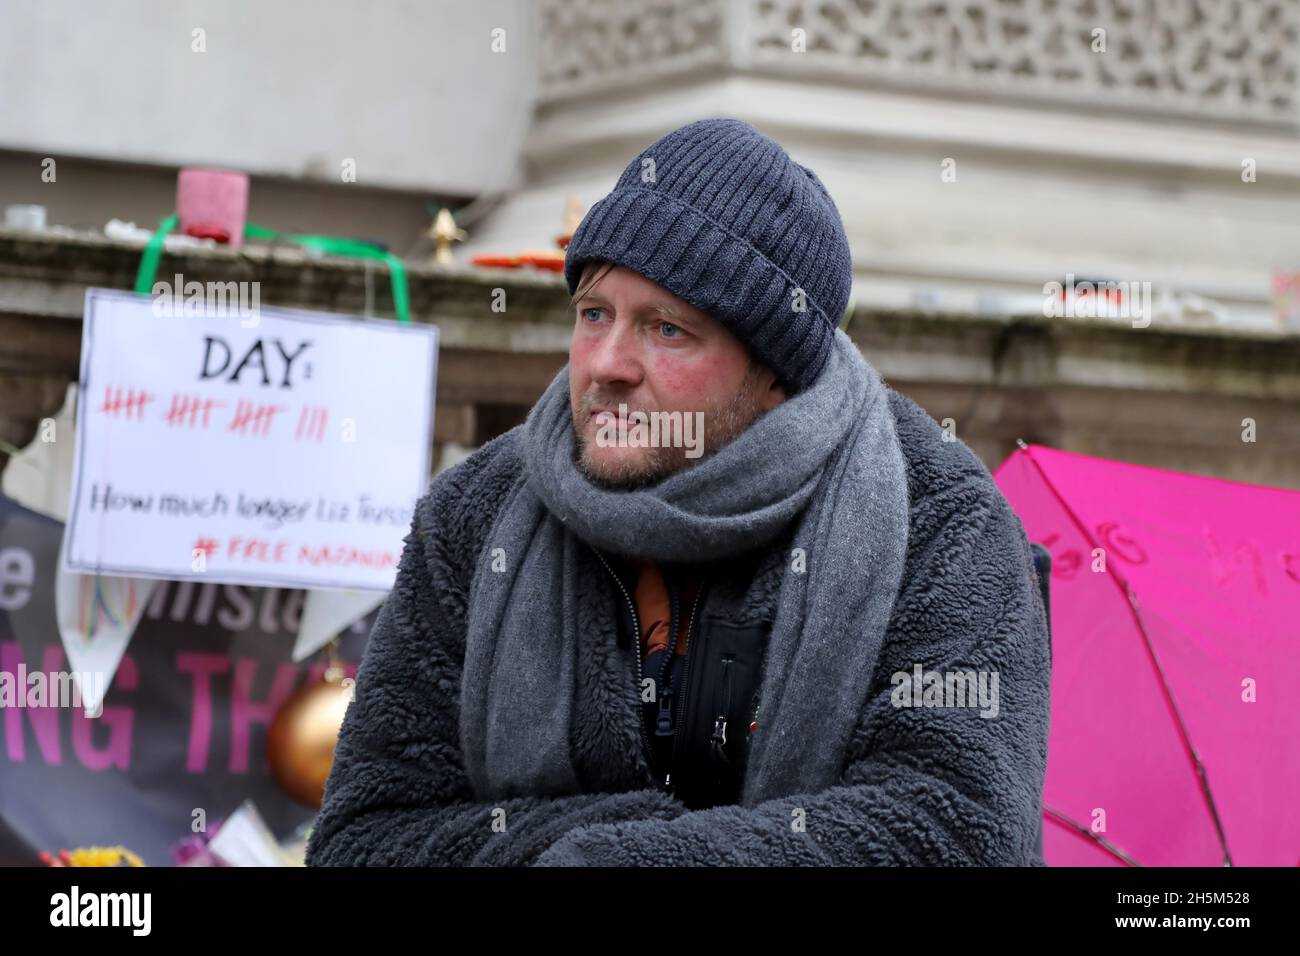 Londra, UK, 10 novembre 2021: Richard Ratcliffe il 18° giorno di uno sciopero della fame presso l'ufficio degli affari esteri del Regno Unito per fare pressione sul Regno Unito per garantire il ritorno di sua moglie Foto Stock